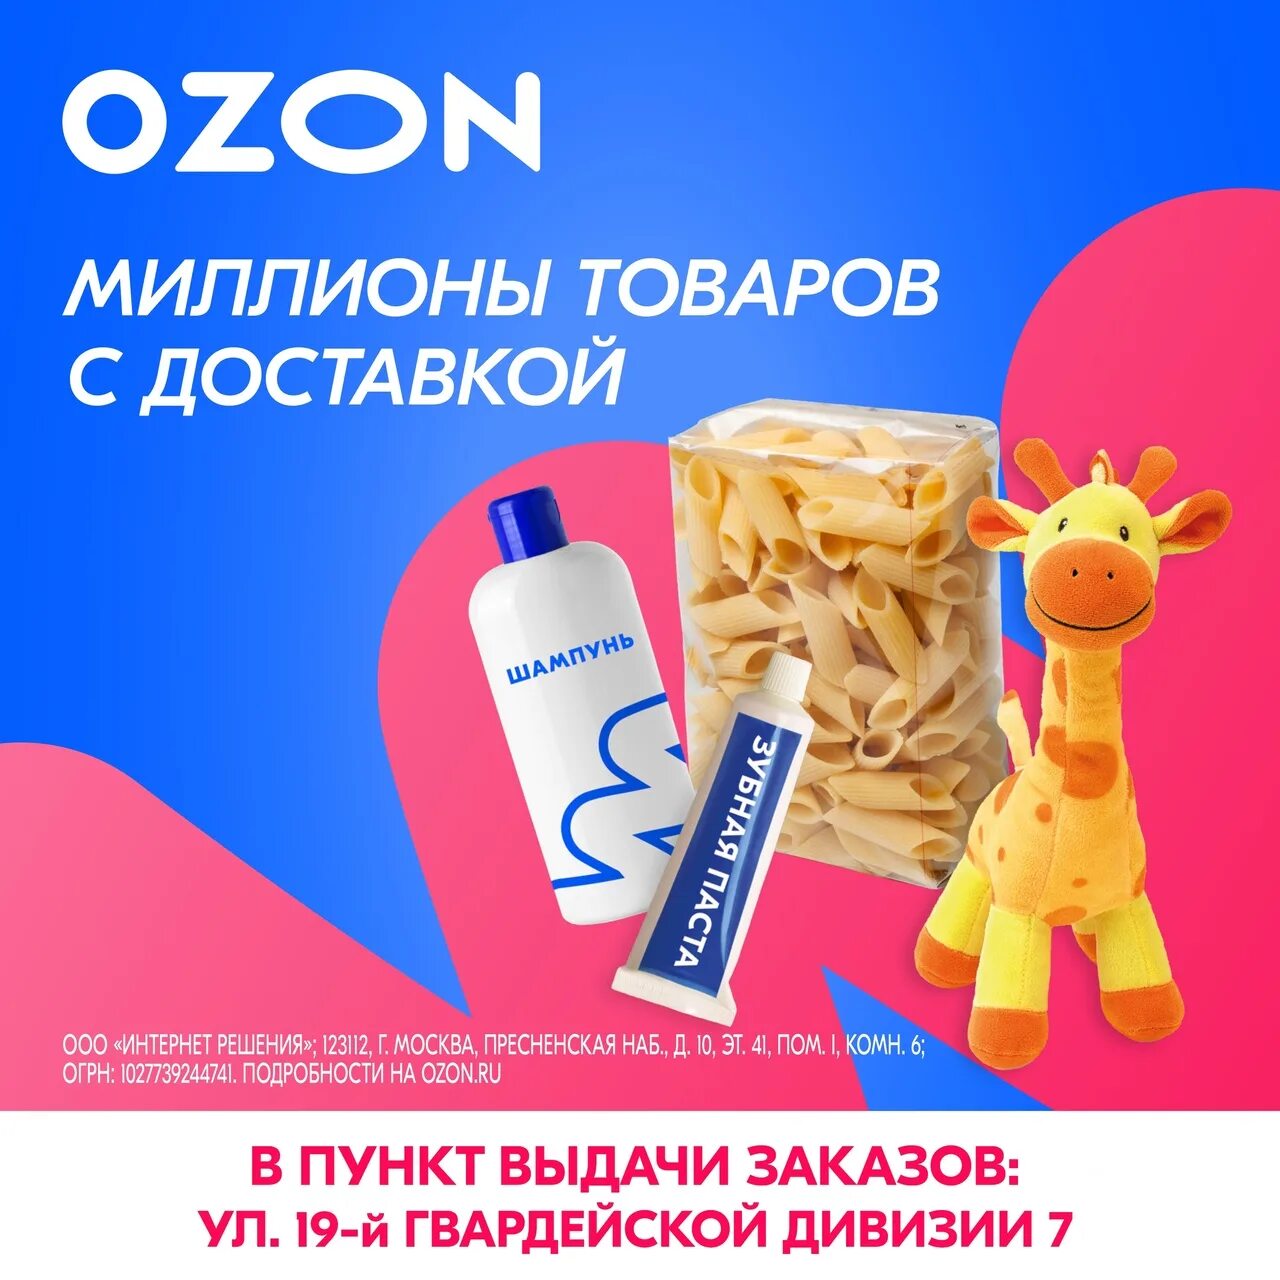 Пункт выдающихся заказов OZON. Баннер Озон мы открылись. Новый пункт выдачи Озон. OZON реклама для ПВЗ.